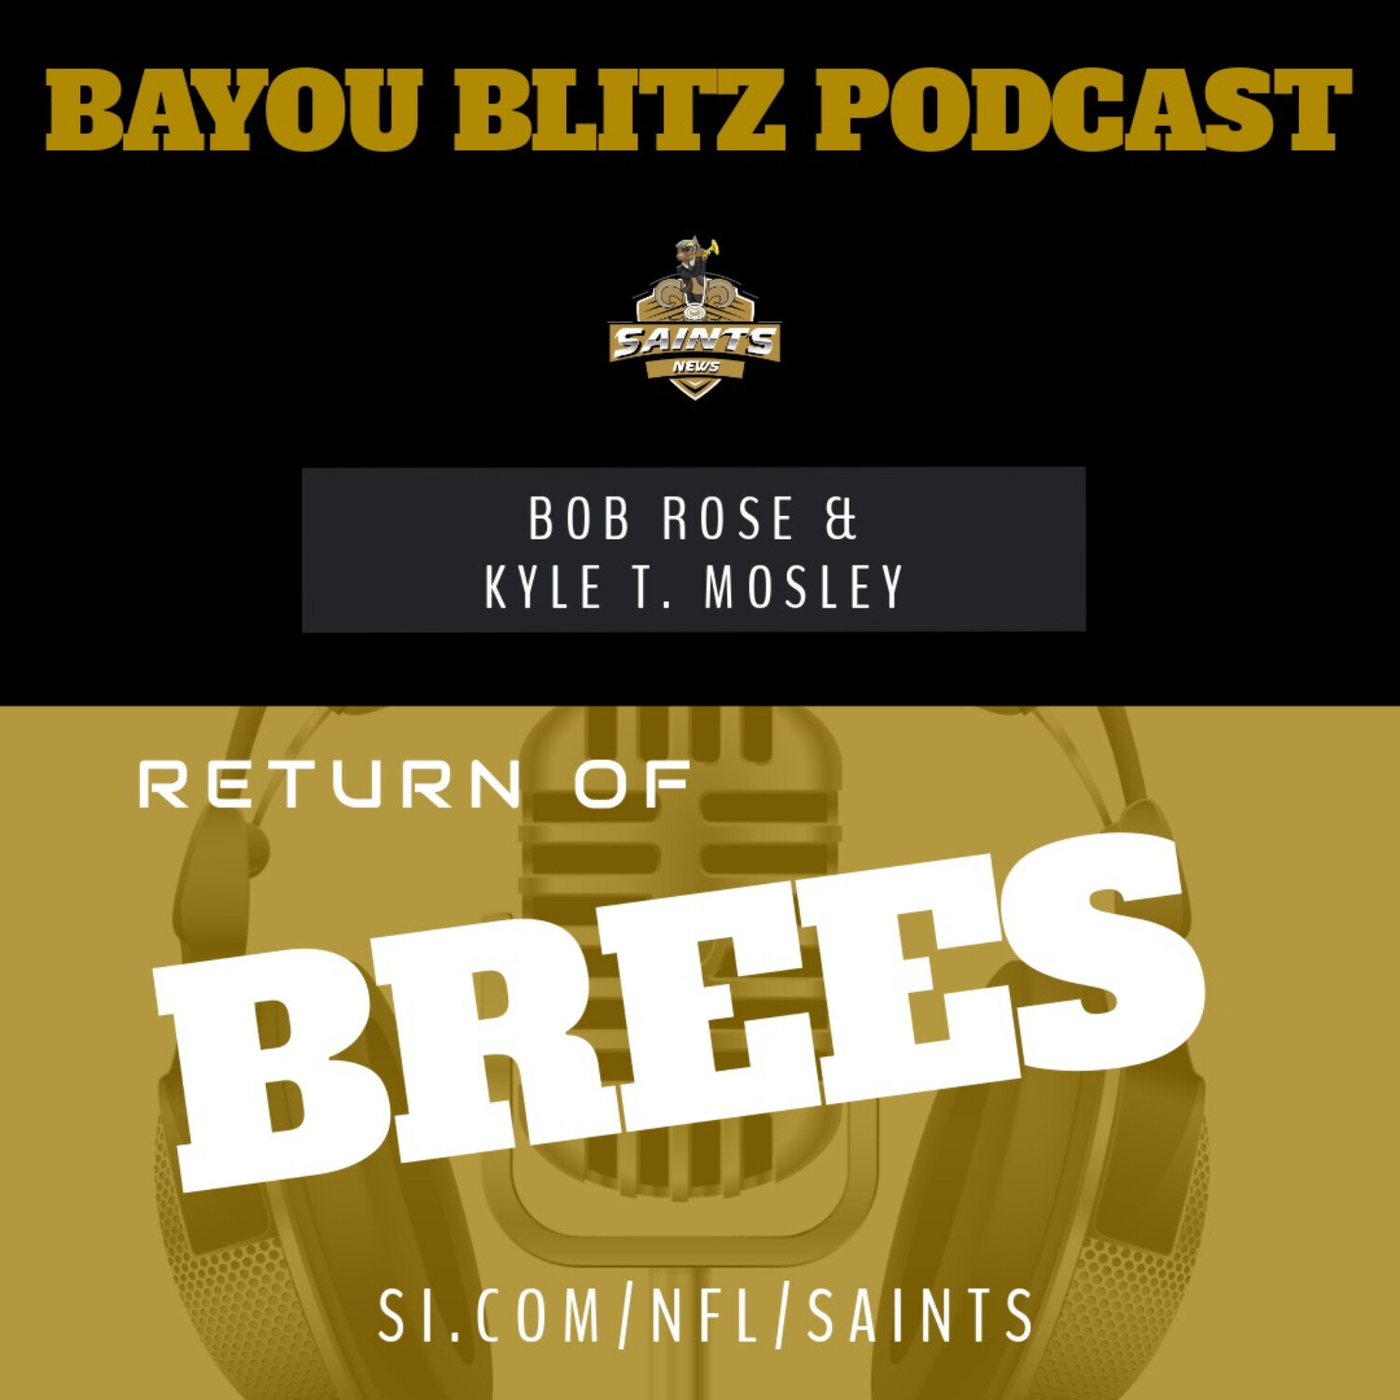 Bayou Blitz:  The Return of Brees